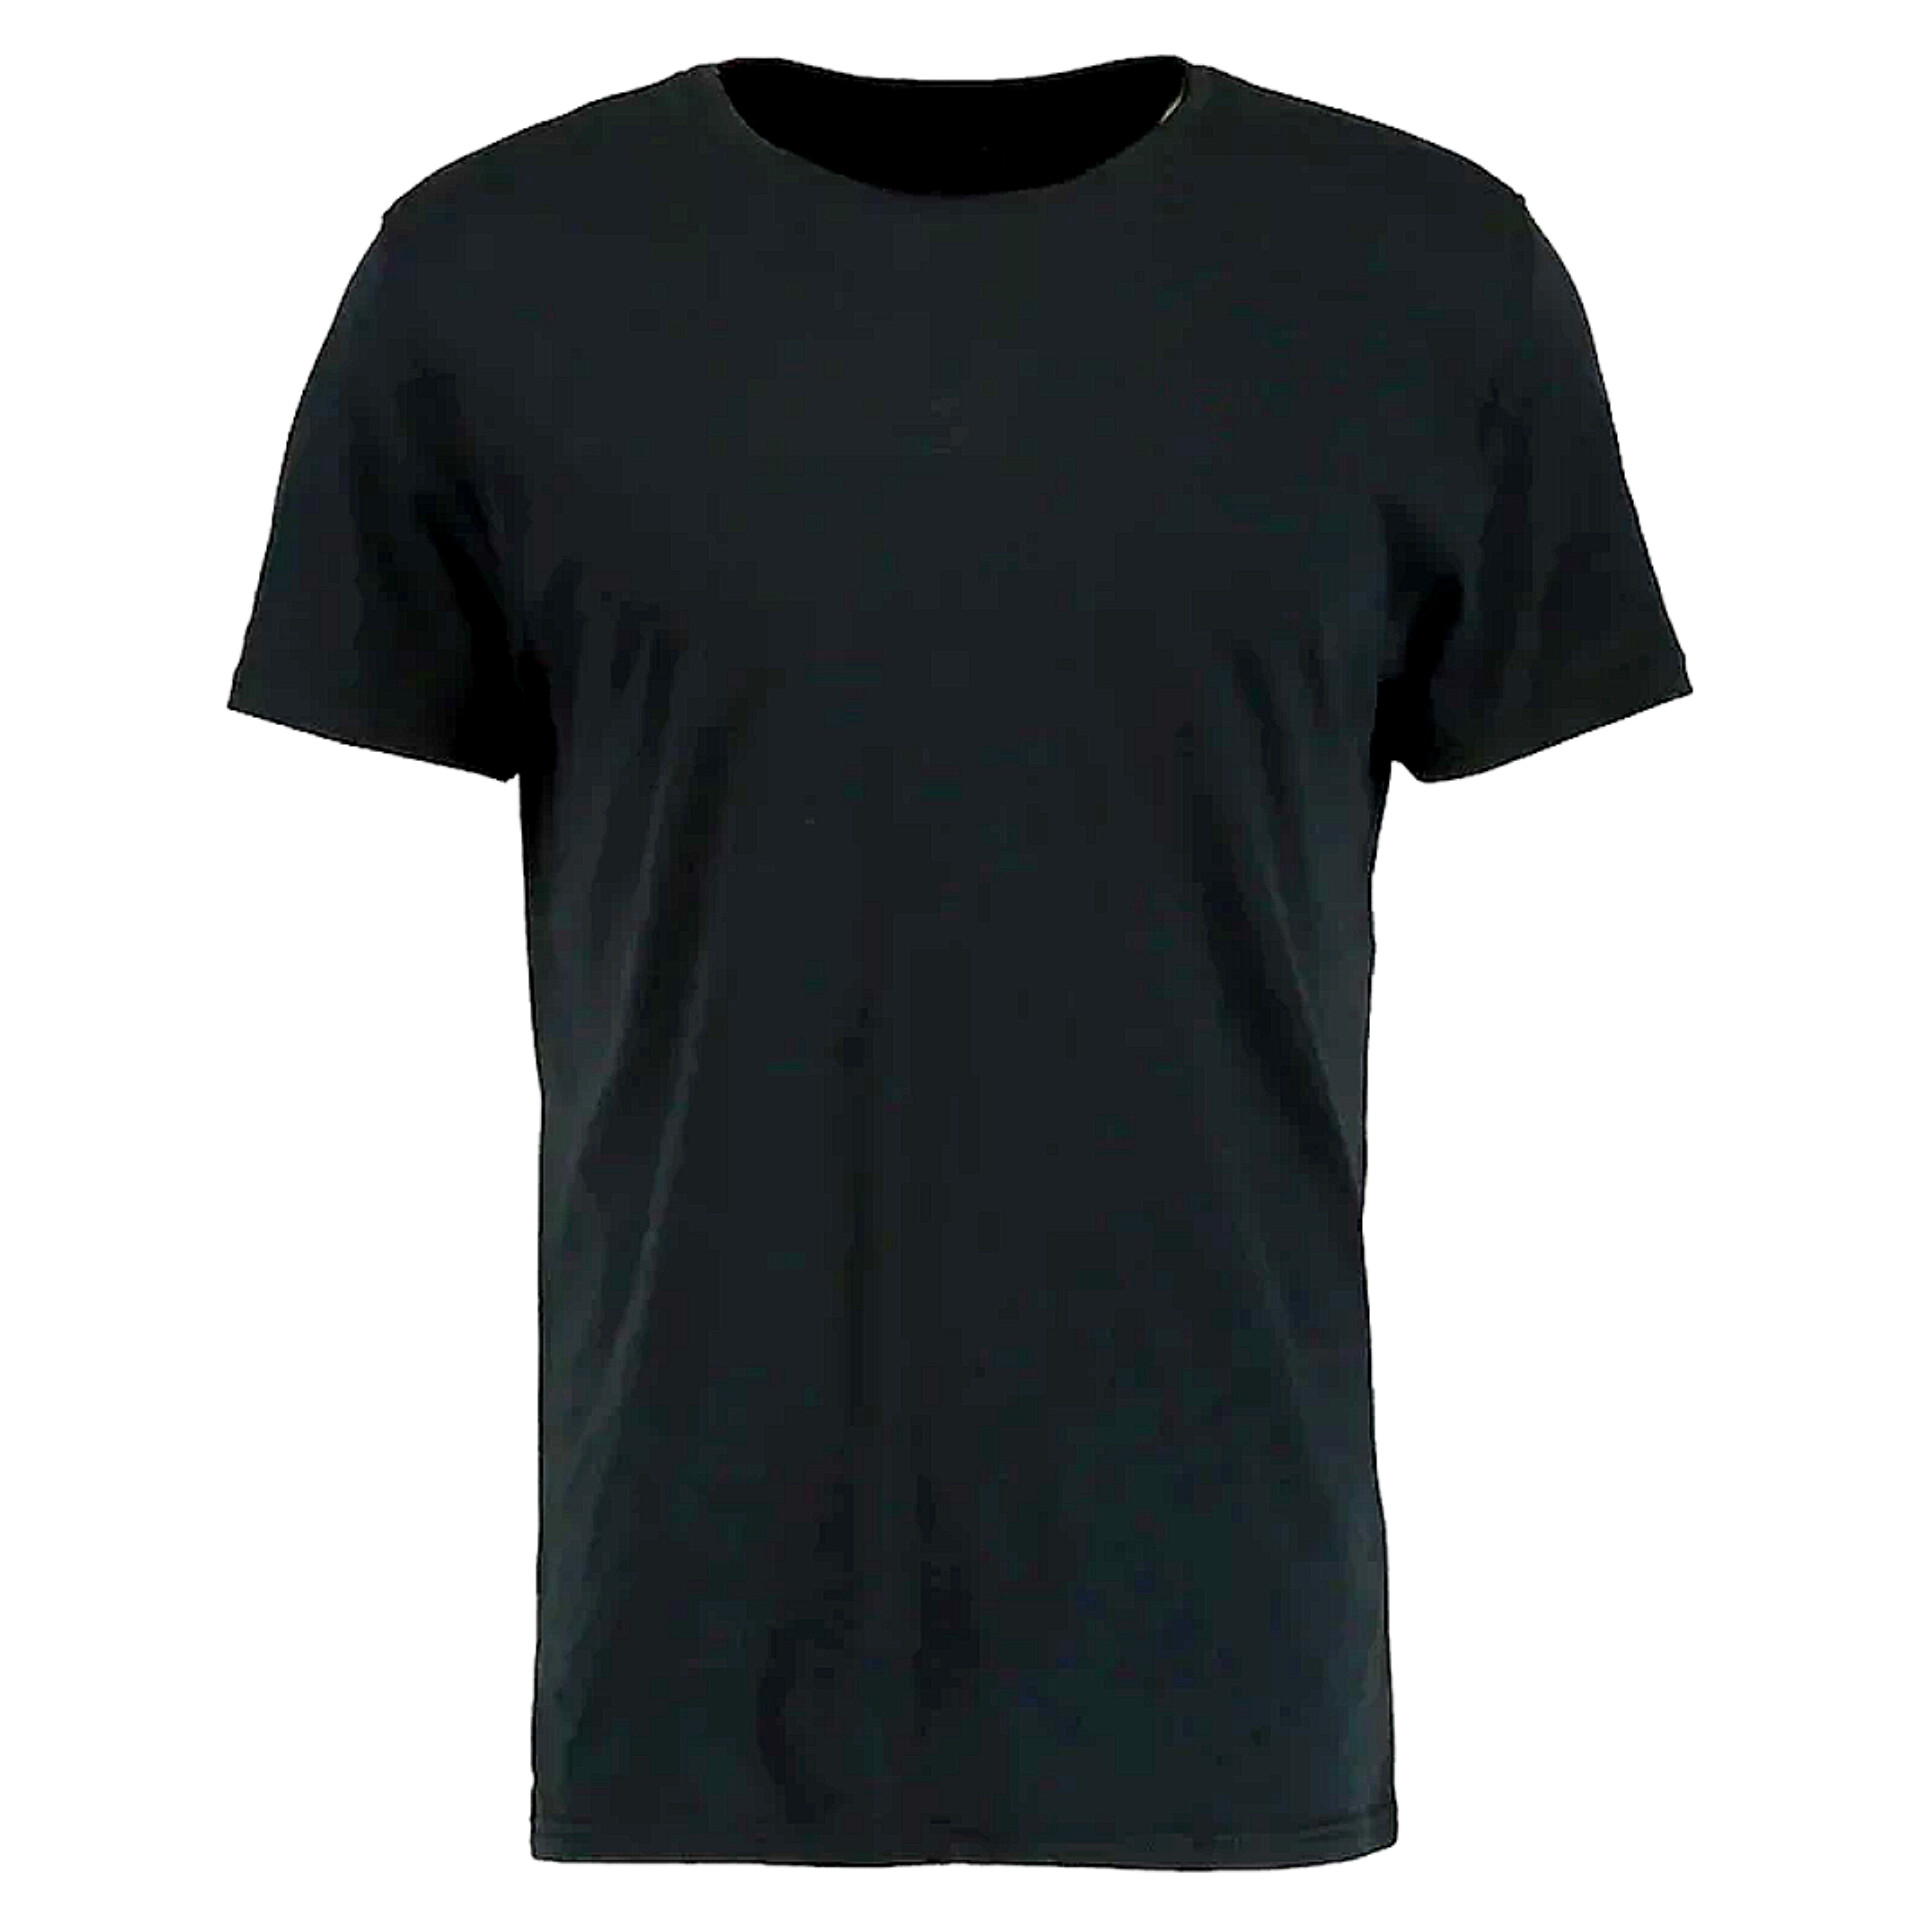 تی شرت آستین کوتاه زنانه مدل ساده کد K543 رنگ مشکی